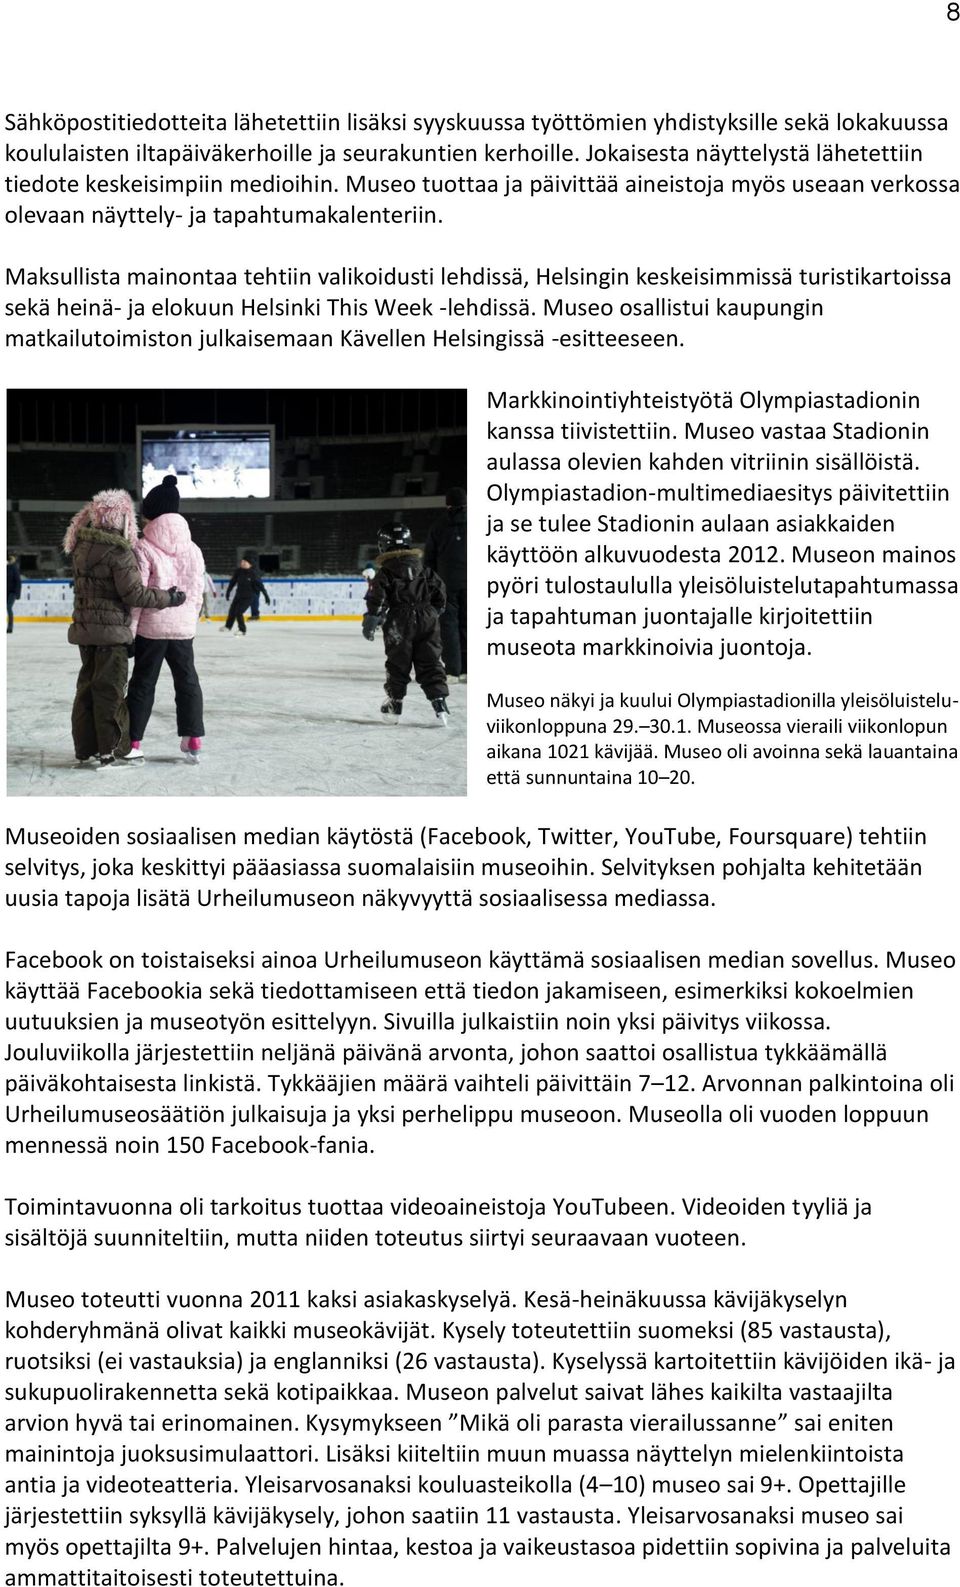 Maksullista mainontaa tehtiin valikoidusti lehdissä, Helsingin keskeisimmissä turistikartoissa sekä heinä- ja elokuun Helsinki This Week -lehdissä.